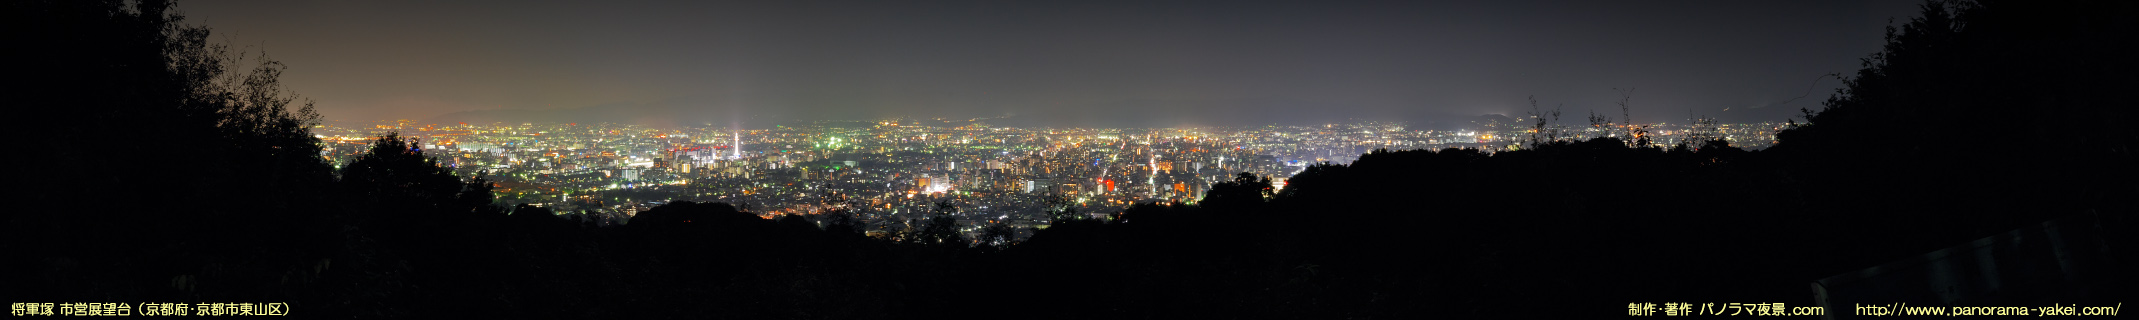 将軍塚 市営展望台からのパノラマ夜景写真 ～京都市街の夜景～